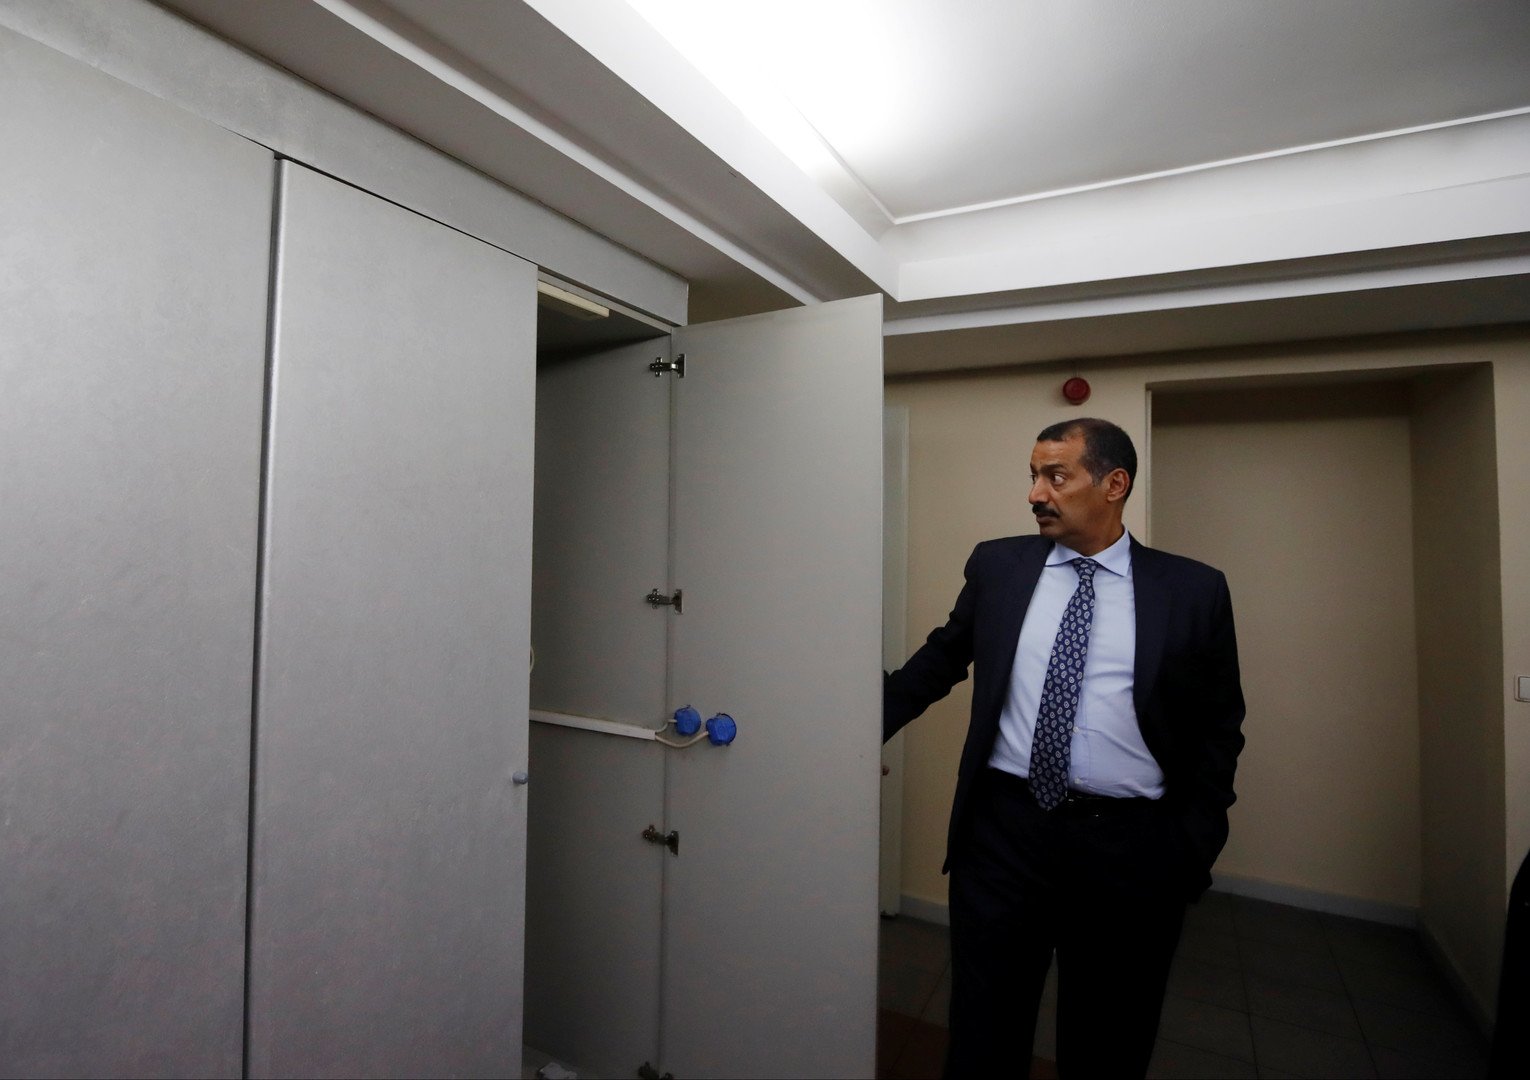 الصور الأولى من داخل القنصلية السعودية في إسطنبول بعد اختفاء خاشقجي